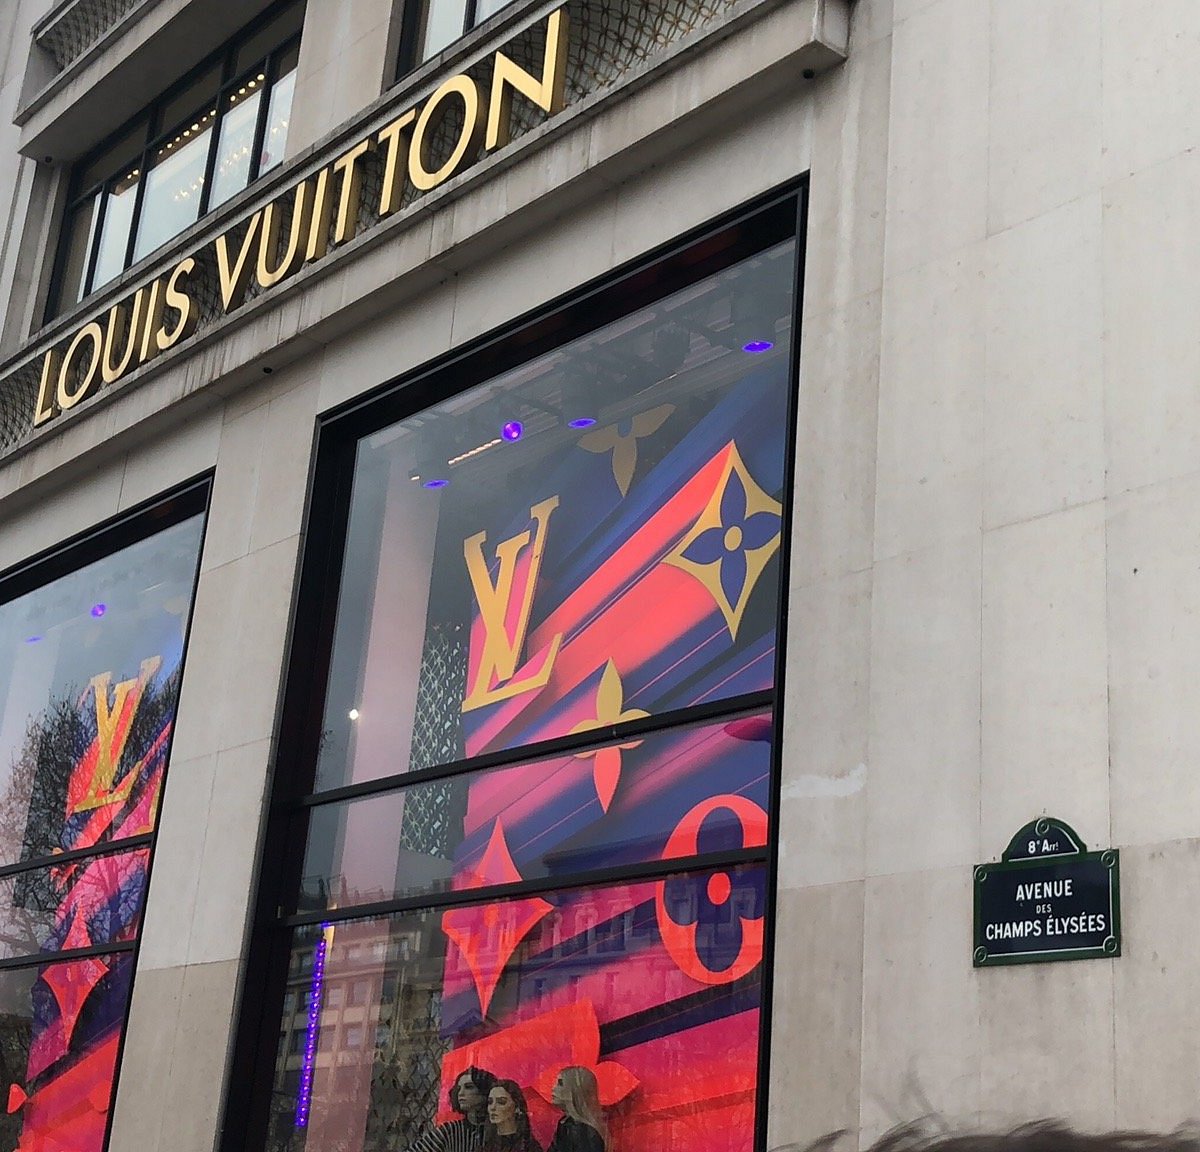 Louis Vuitton Maison Champs-Élysées, Golden Triangle, Paris, Île